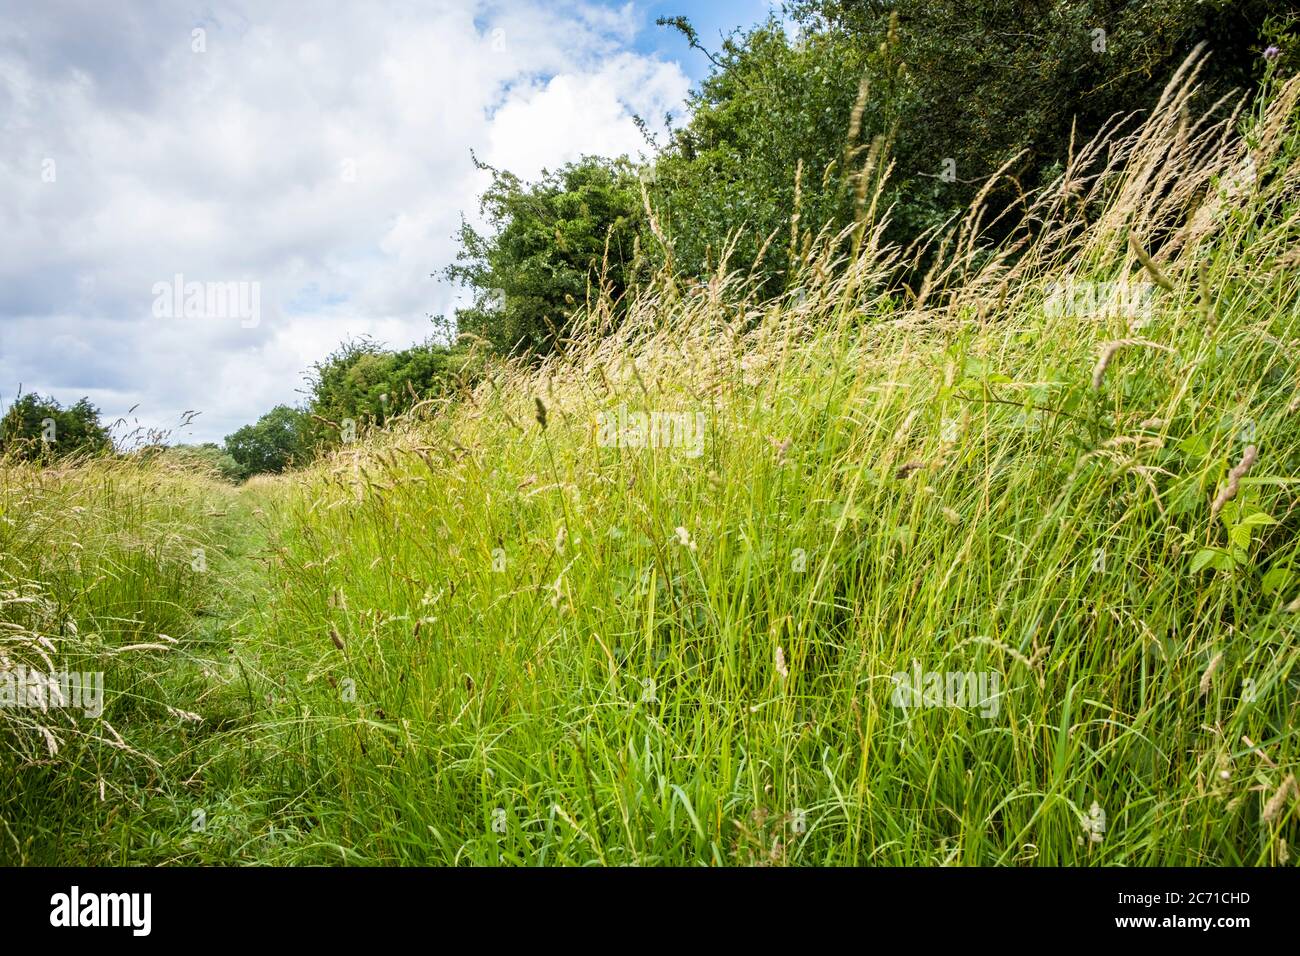 Langes Gras im Wind mit einem Pfad, der von Menschen gebildet wird, die durch das Feld gehen, Nottinghamshire, England, Großbritannien Stockfoto